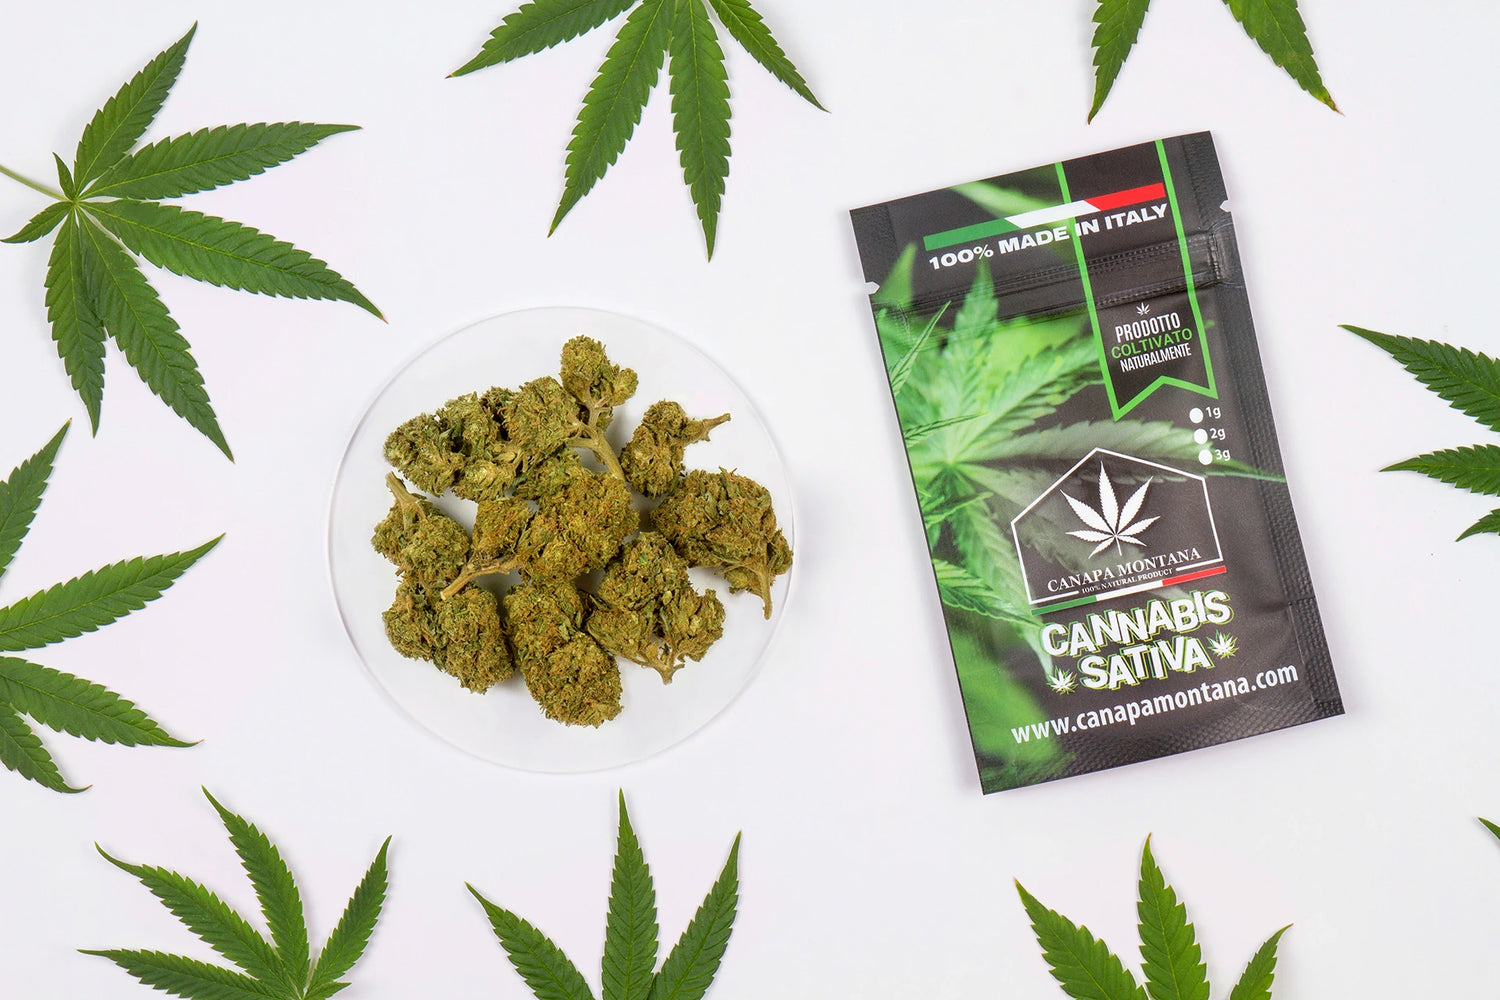 Cannabis light coltivata in Italia ad alto CBD-Canapa Montana